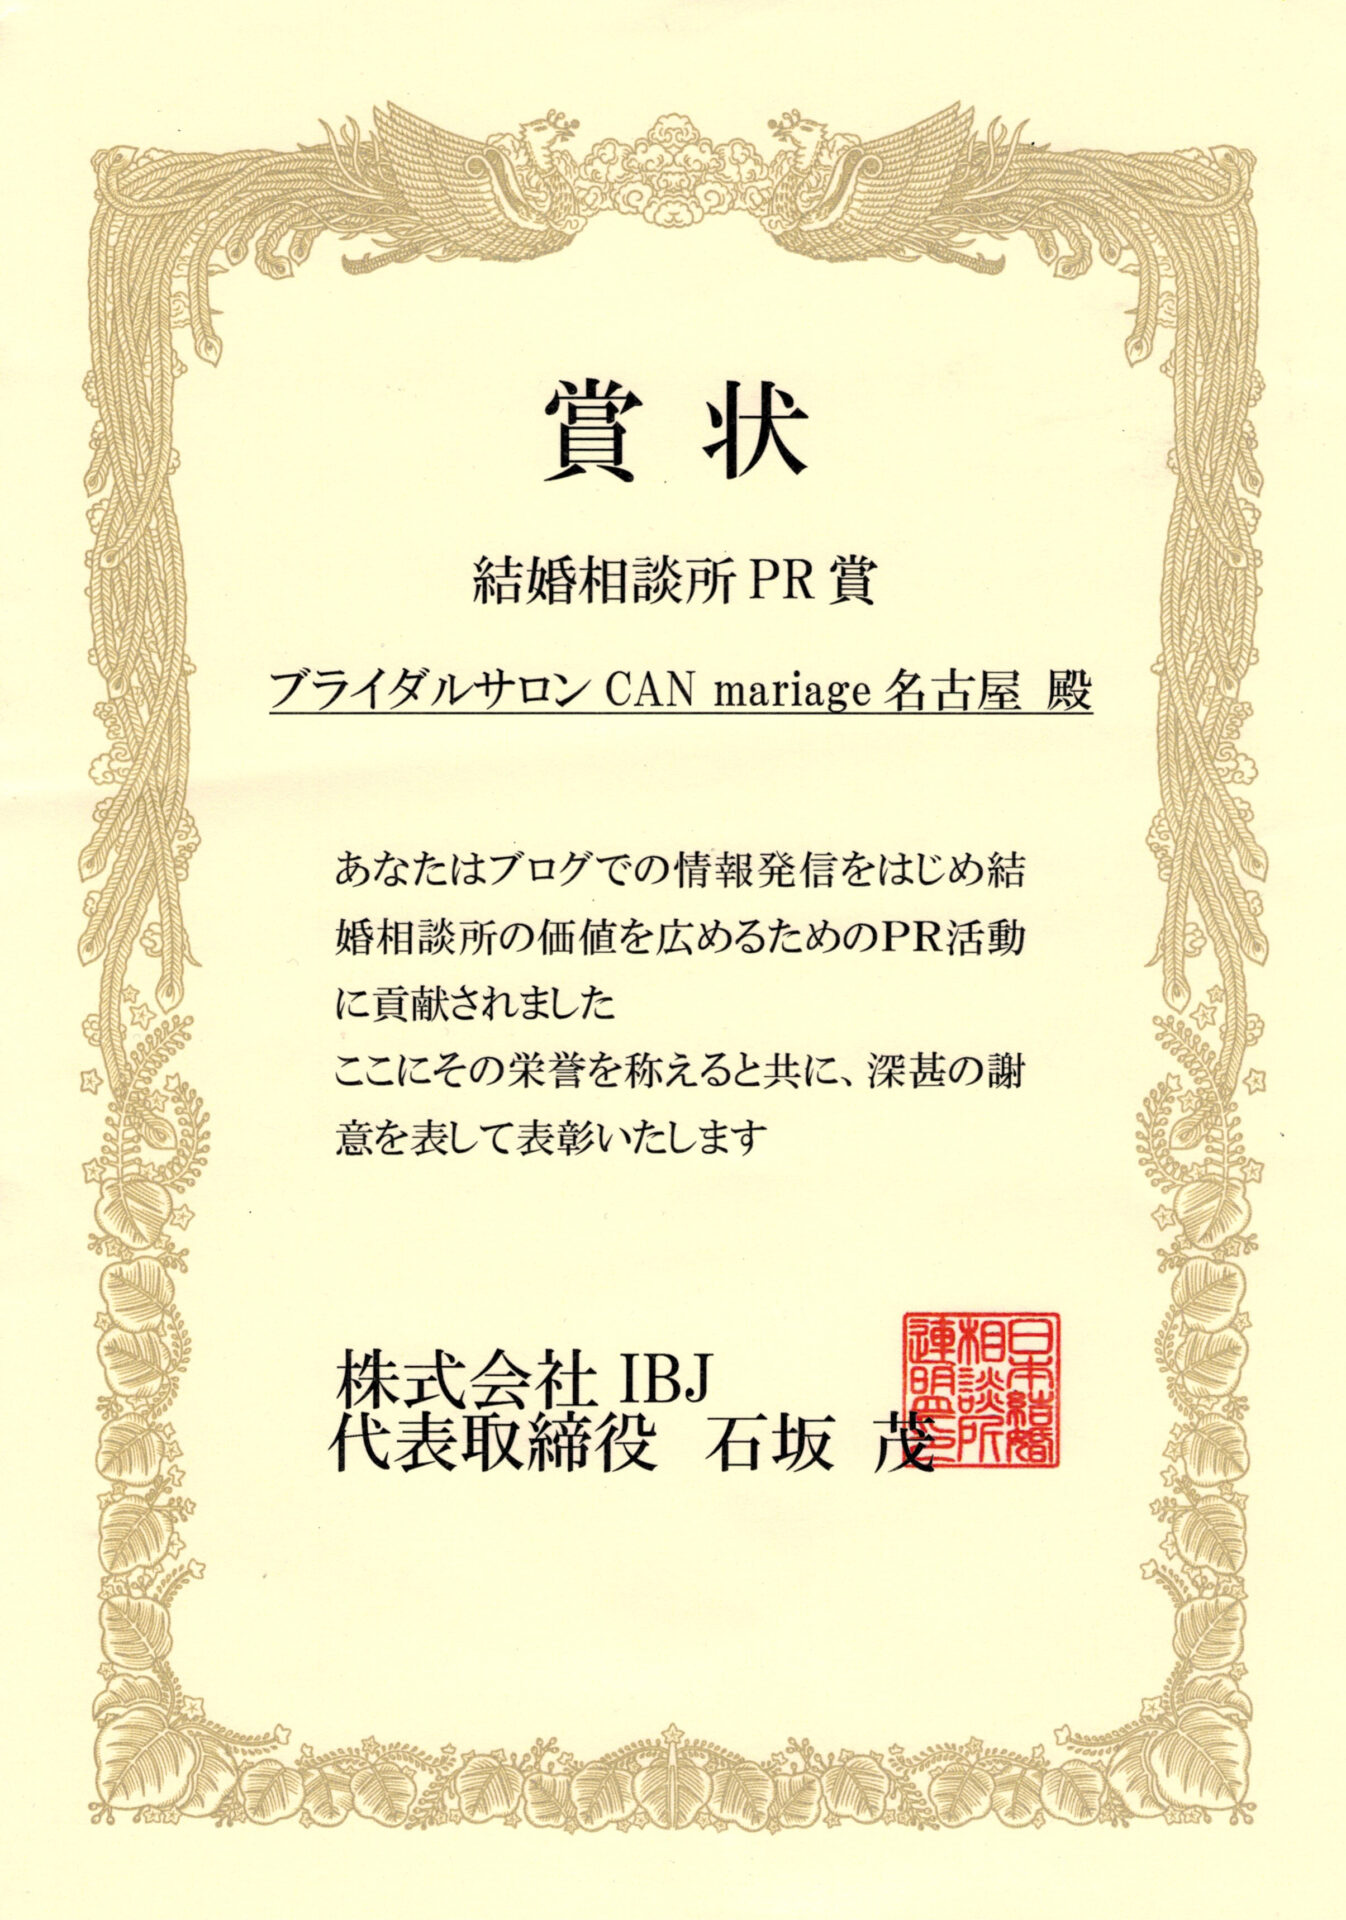 名古屋新栄本店 IBJ 結婚相談所PR賞を受賞いたしました。